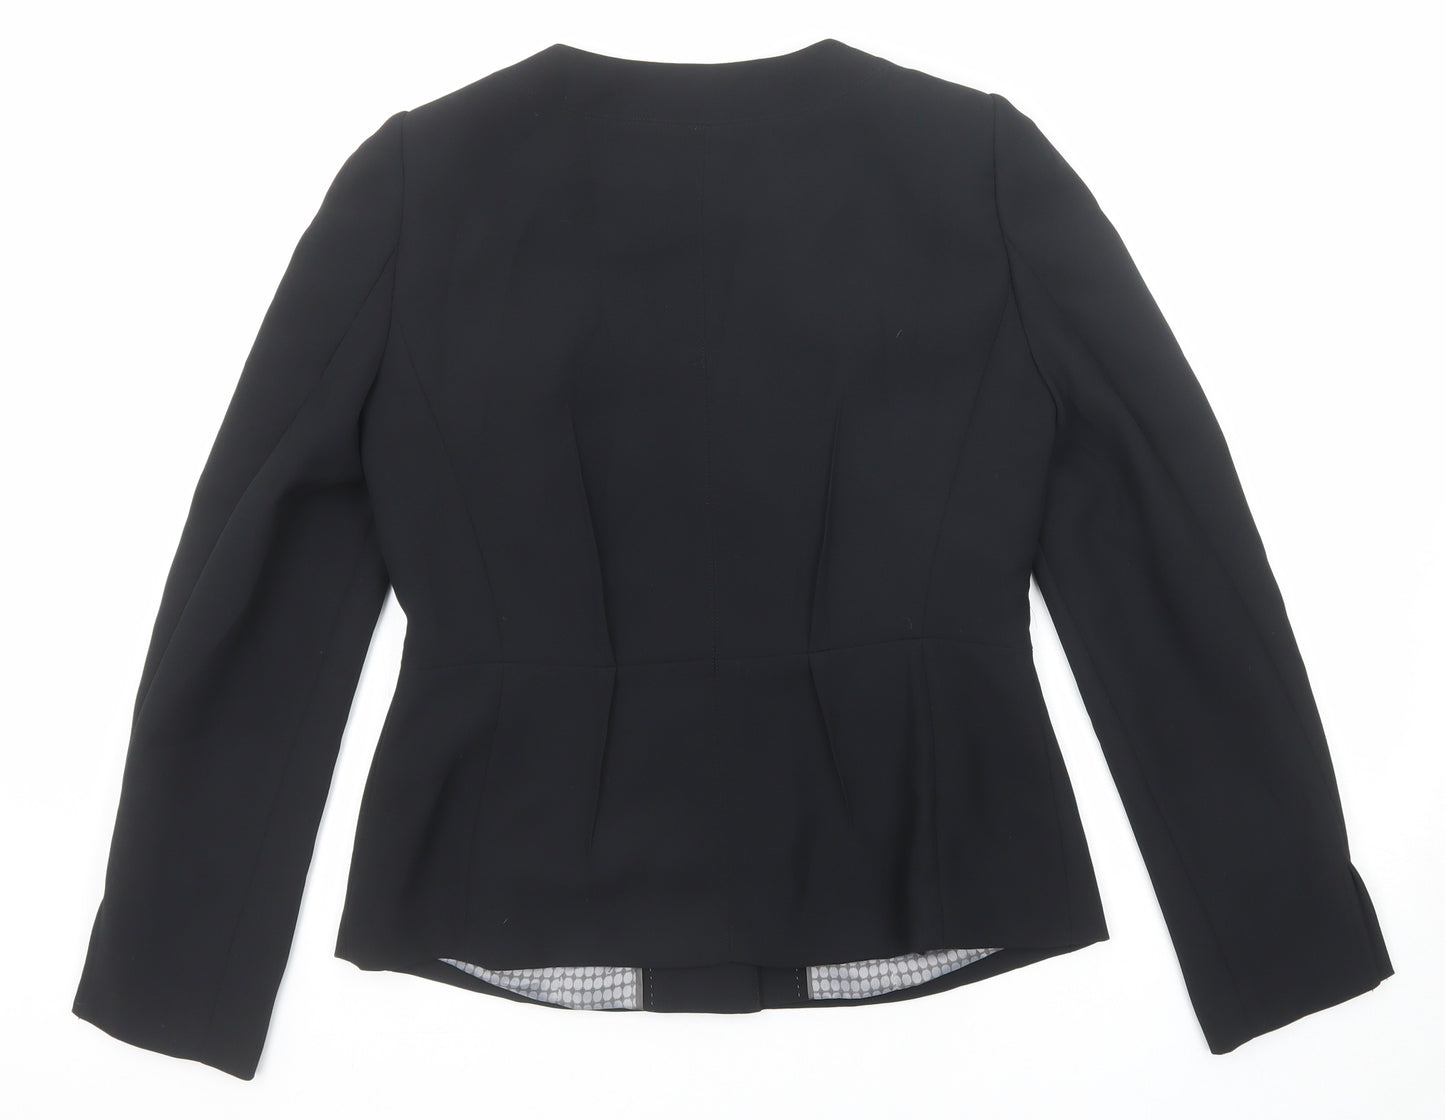 NEXT Womens Black Jacket Blazer Size 12 Snap - Open